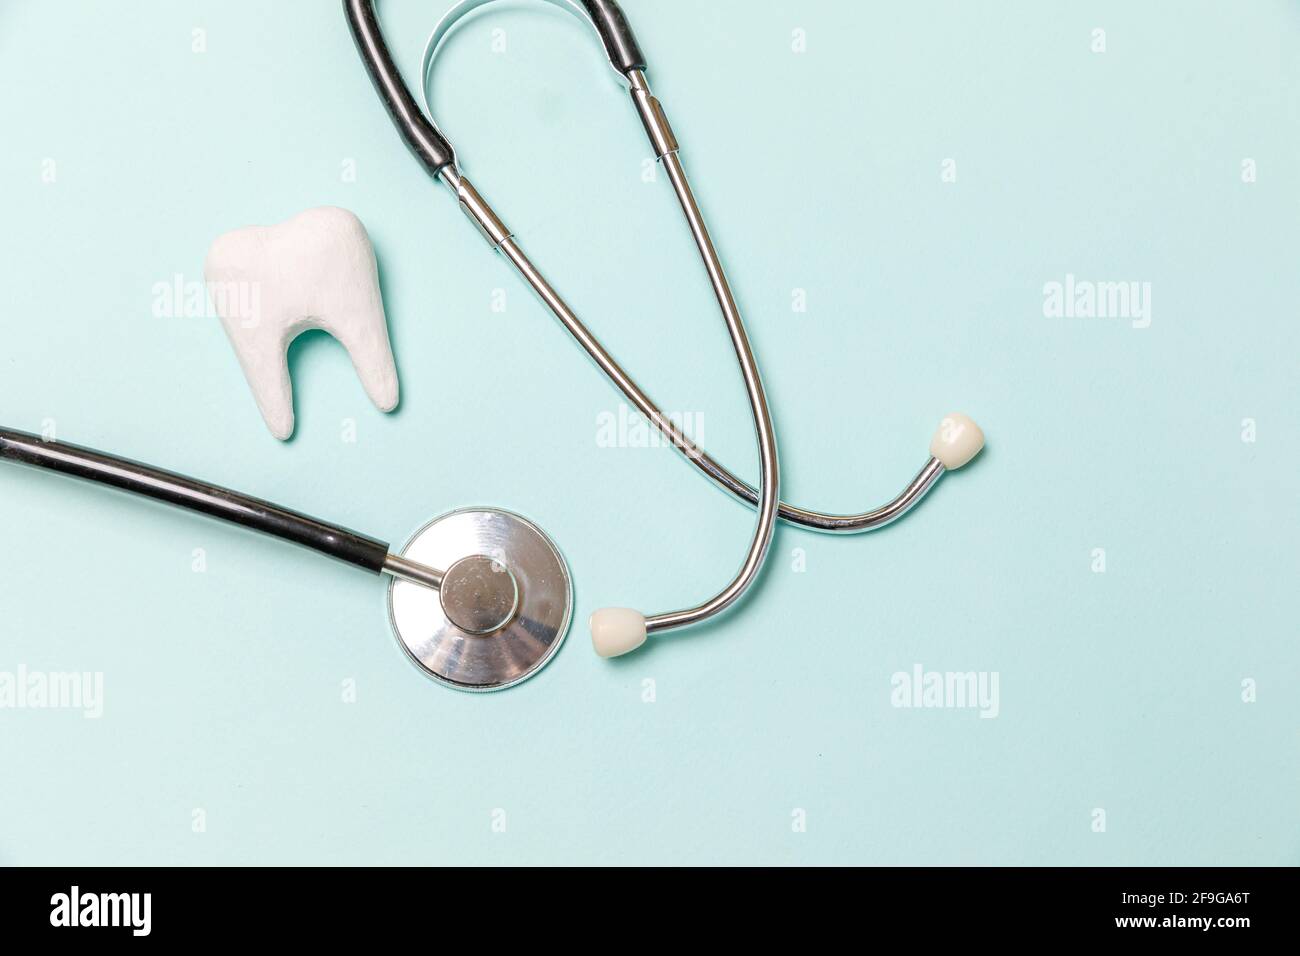 Gesundheit Zahnpflege Konzept. Medizingeräte Stethoskop weiß gesunden Zahn auf pastellblauem Hintergrund isoliert. Instrumentengerät für Zahnarztdocto Stockfoto